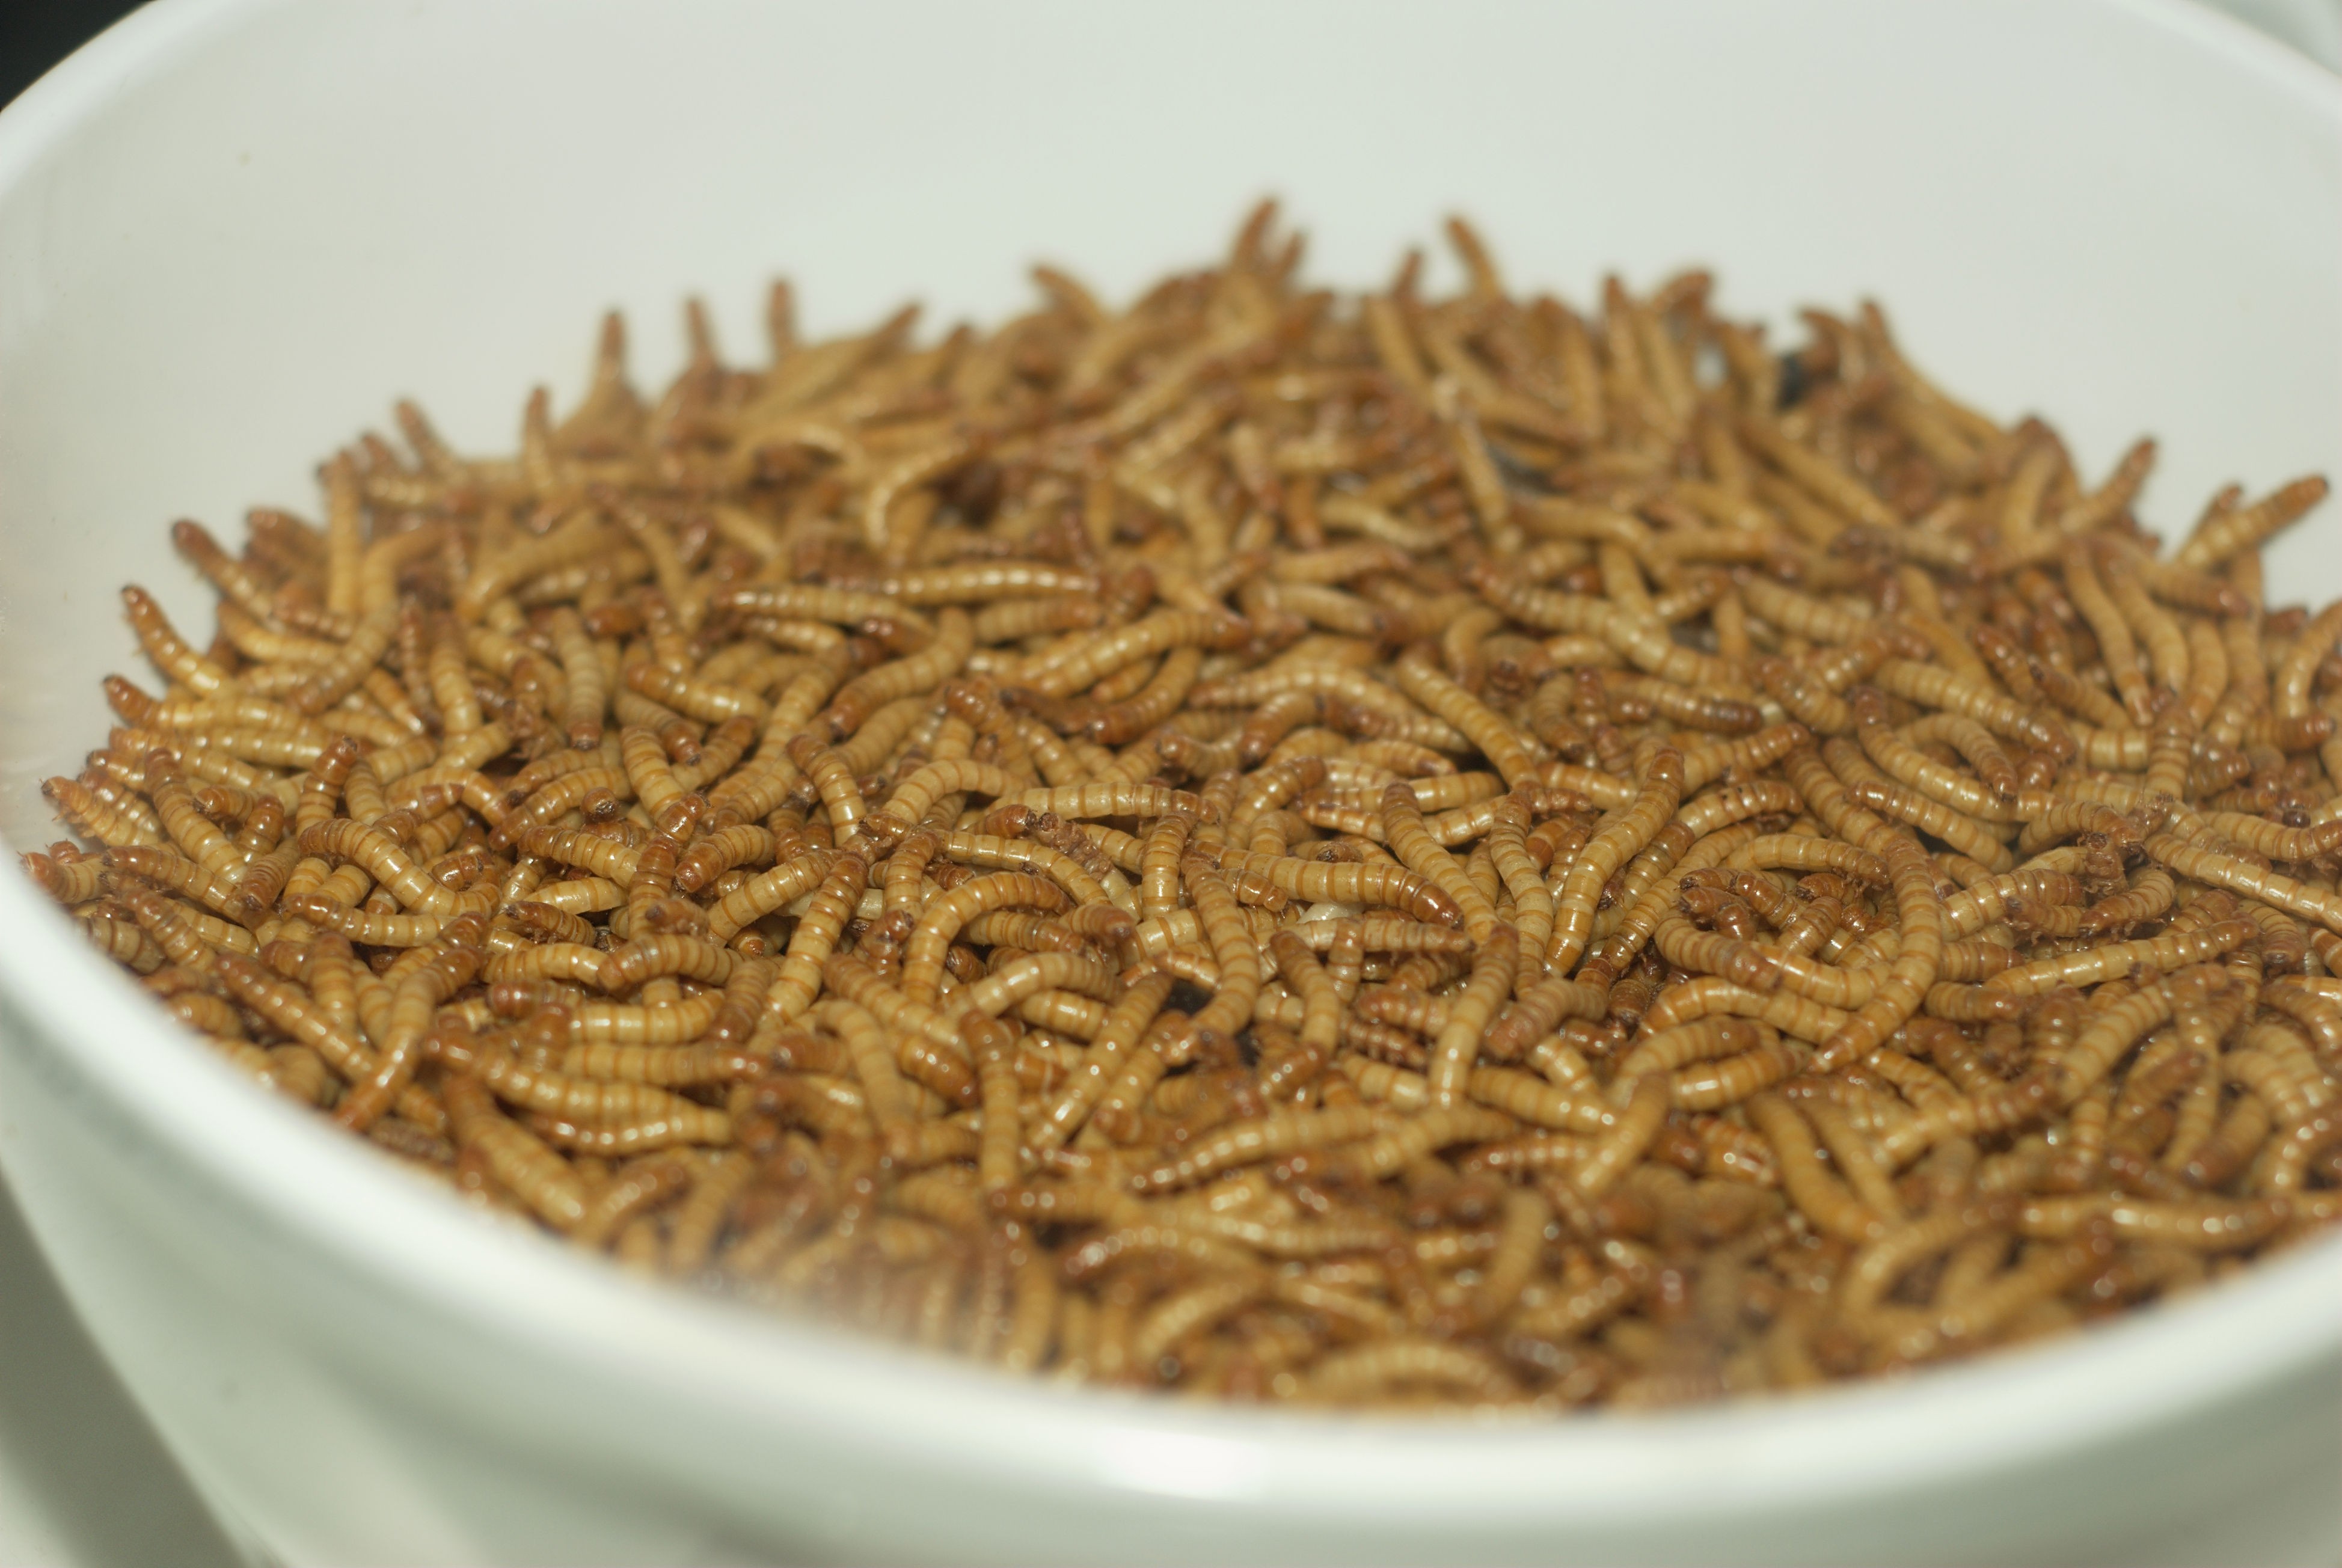 Insecte dans un saladier utilisés comme source de protéine